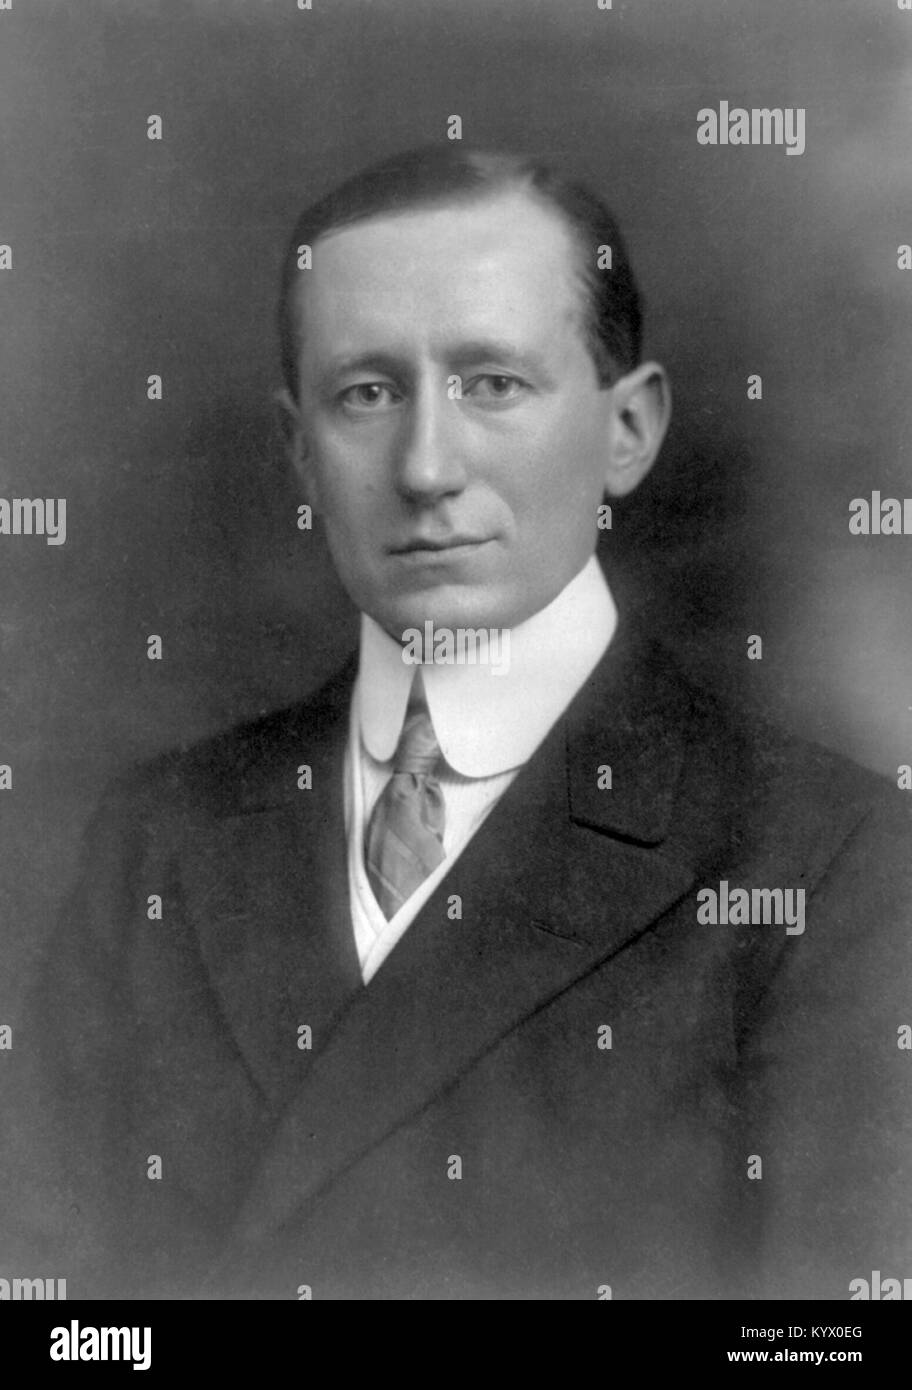 Guglielmo Marconi, I Marqués de Marconi, inventor e ingeniero eléctrico italiano conocido por su trabajo pionero sobre la transmisión de radio a larga distancia, acreditado como el inventor de la radio Foto de stock